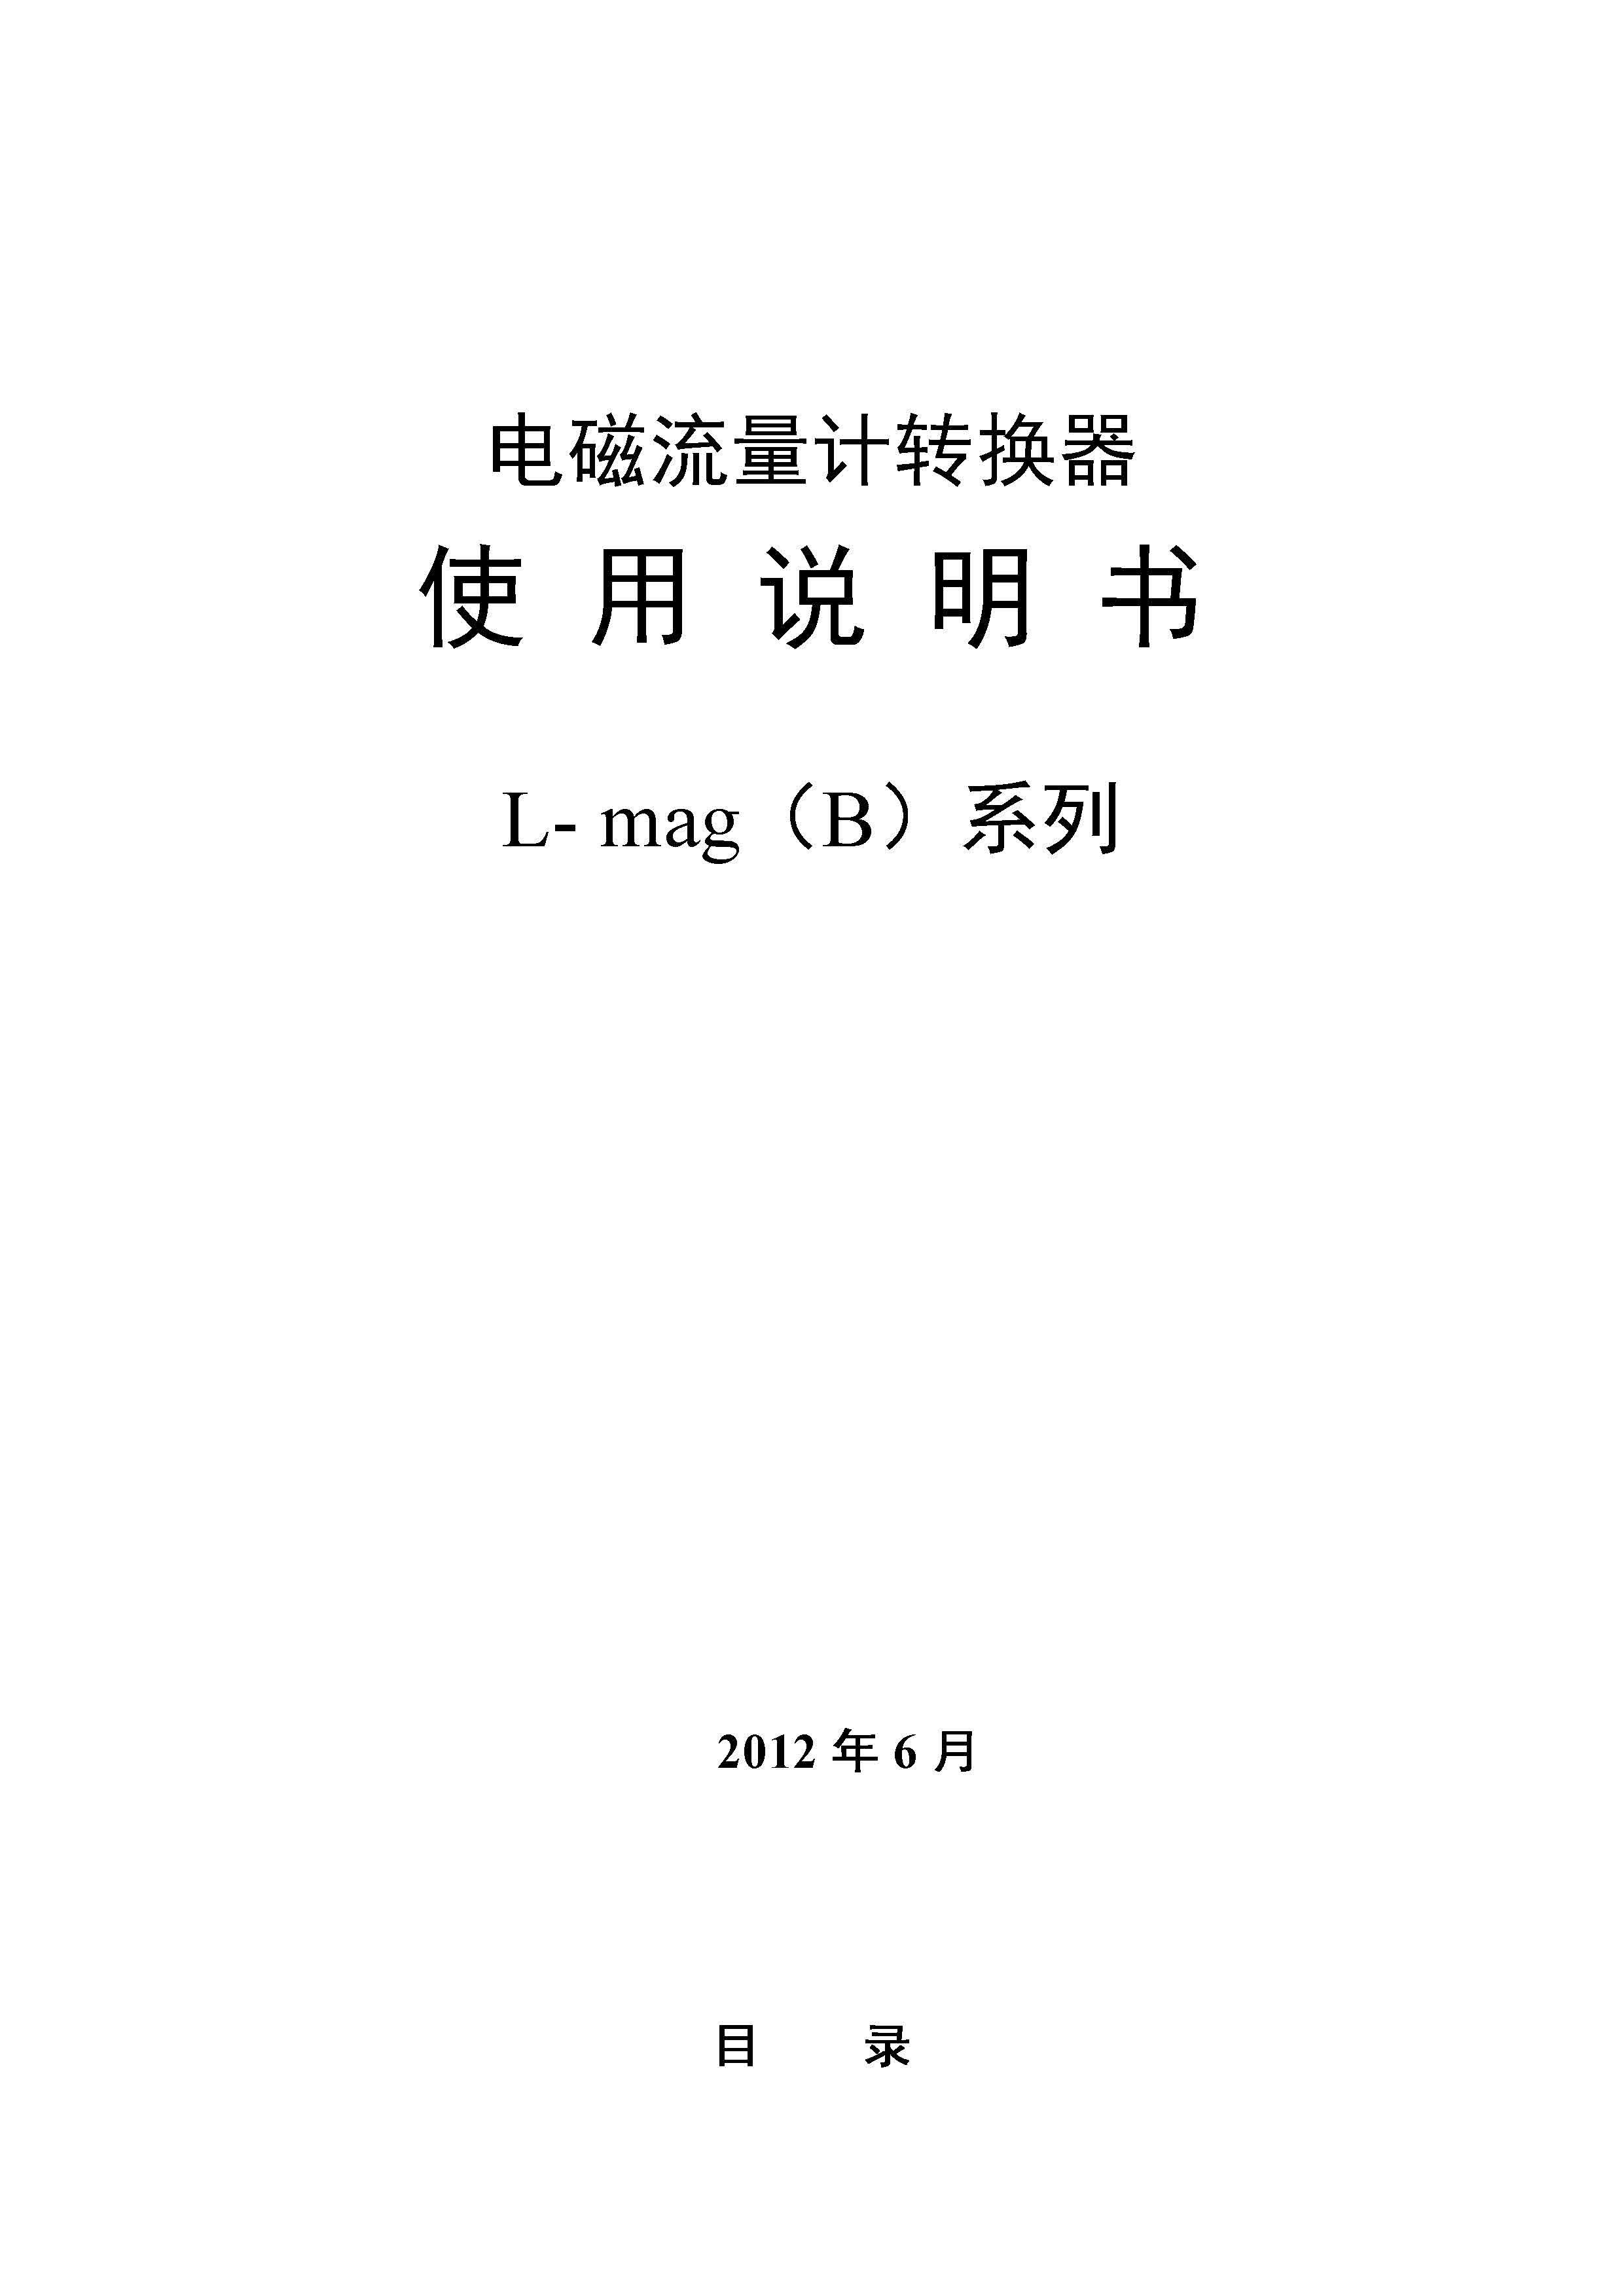 电磁流量转换器(L-mag)B系列（中文）说明书